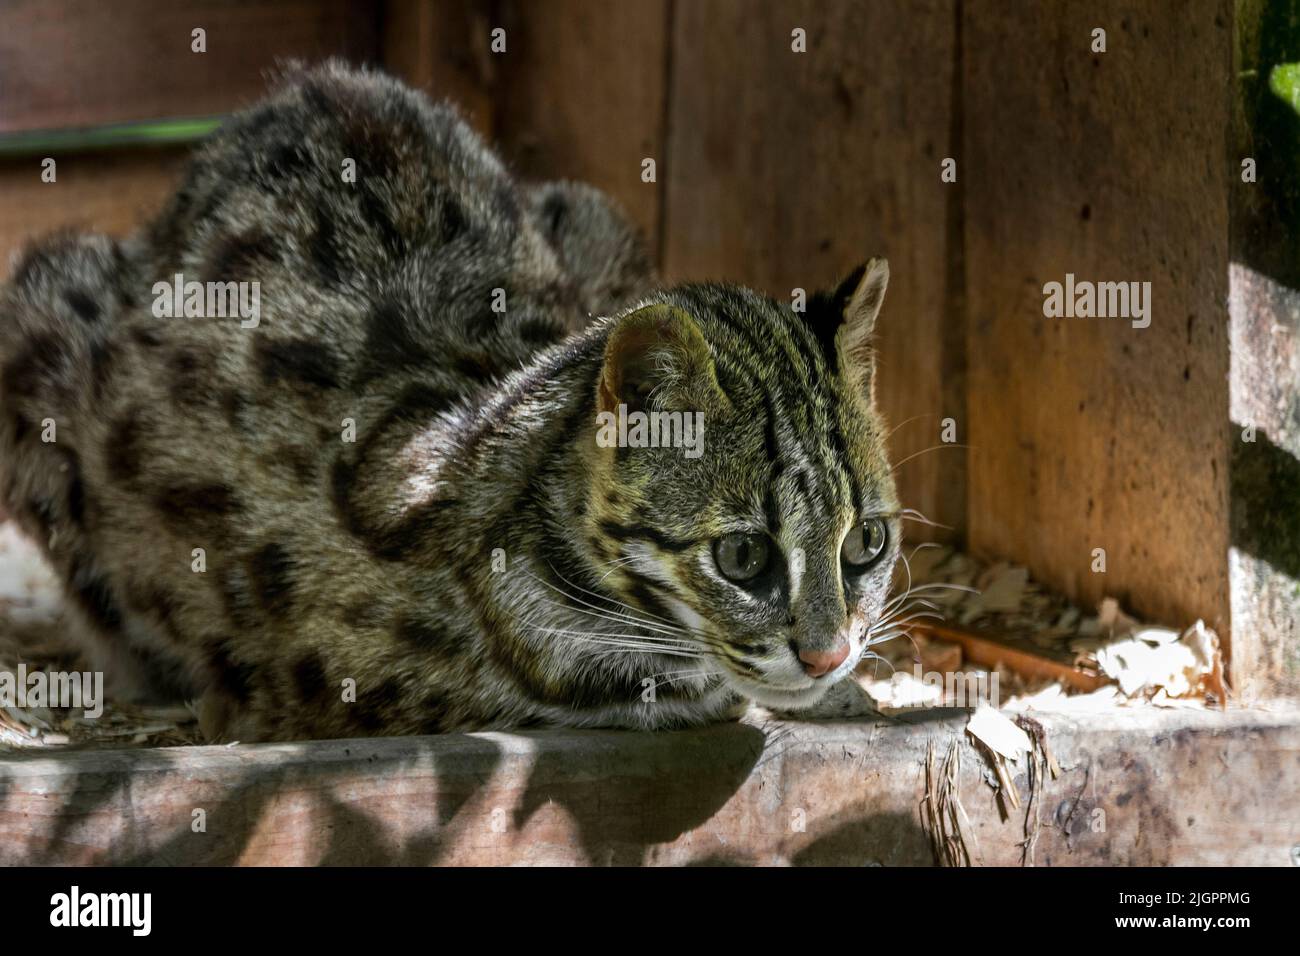 Chat léopard du Bengale (Prionailurus bengalensis bengalensis) originaire d'Asie du Sud et de l'est, se reposant en enceinte au zoo Parc des Félins, France Banque D'Images